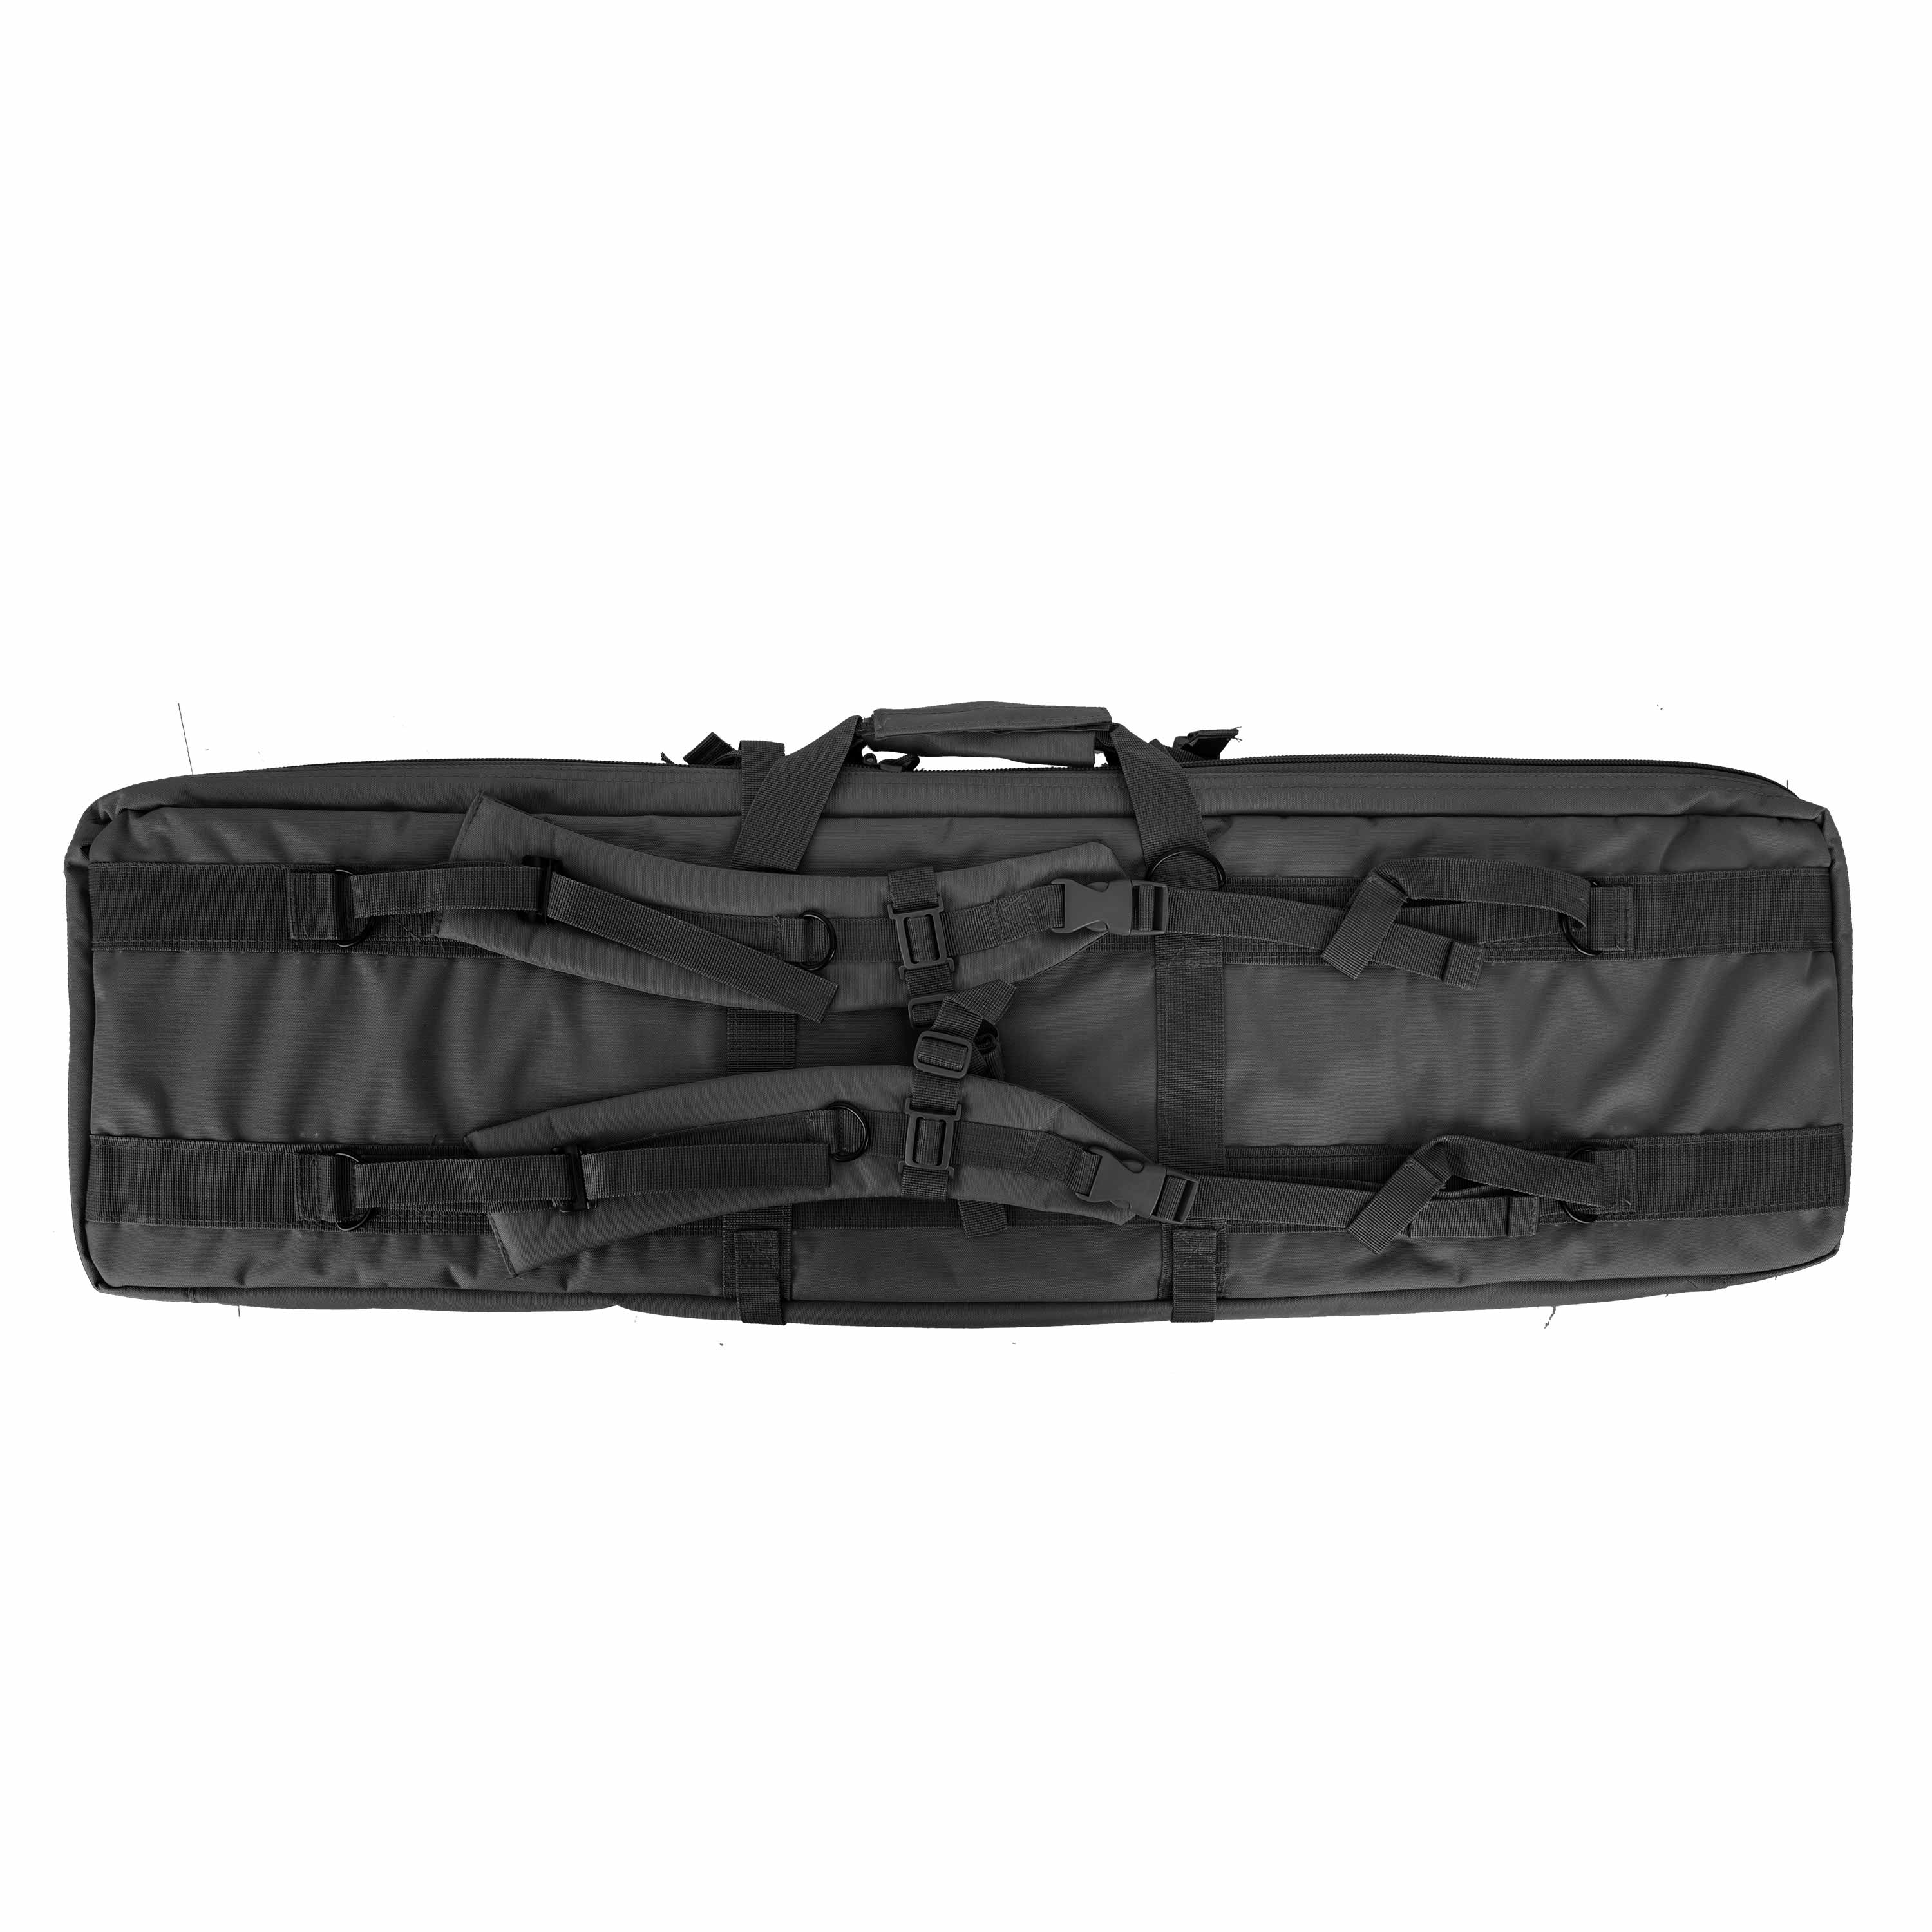 Mil-Tec Rifle Bag black | Mil-Tec Rifle Bag black | Cases | Accessories ...